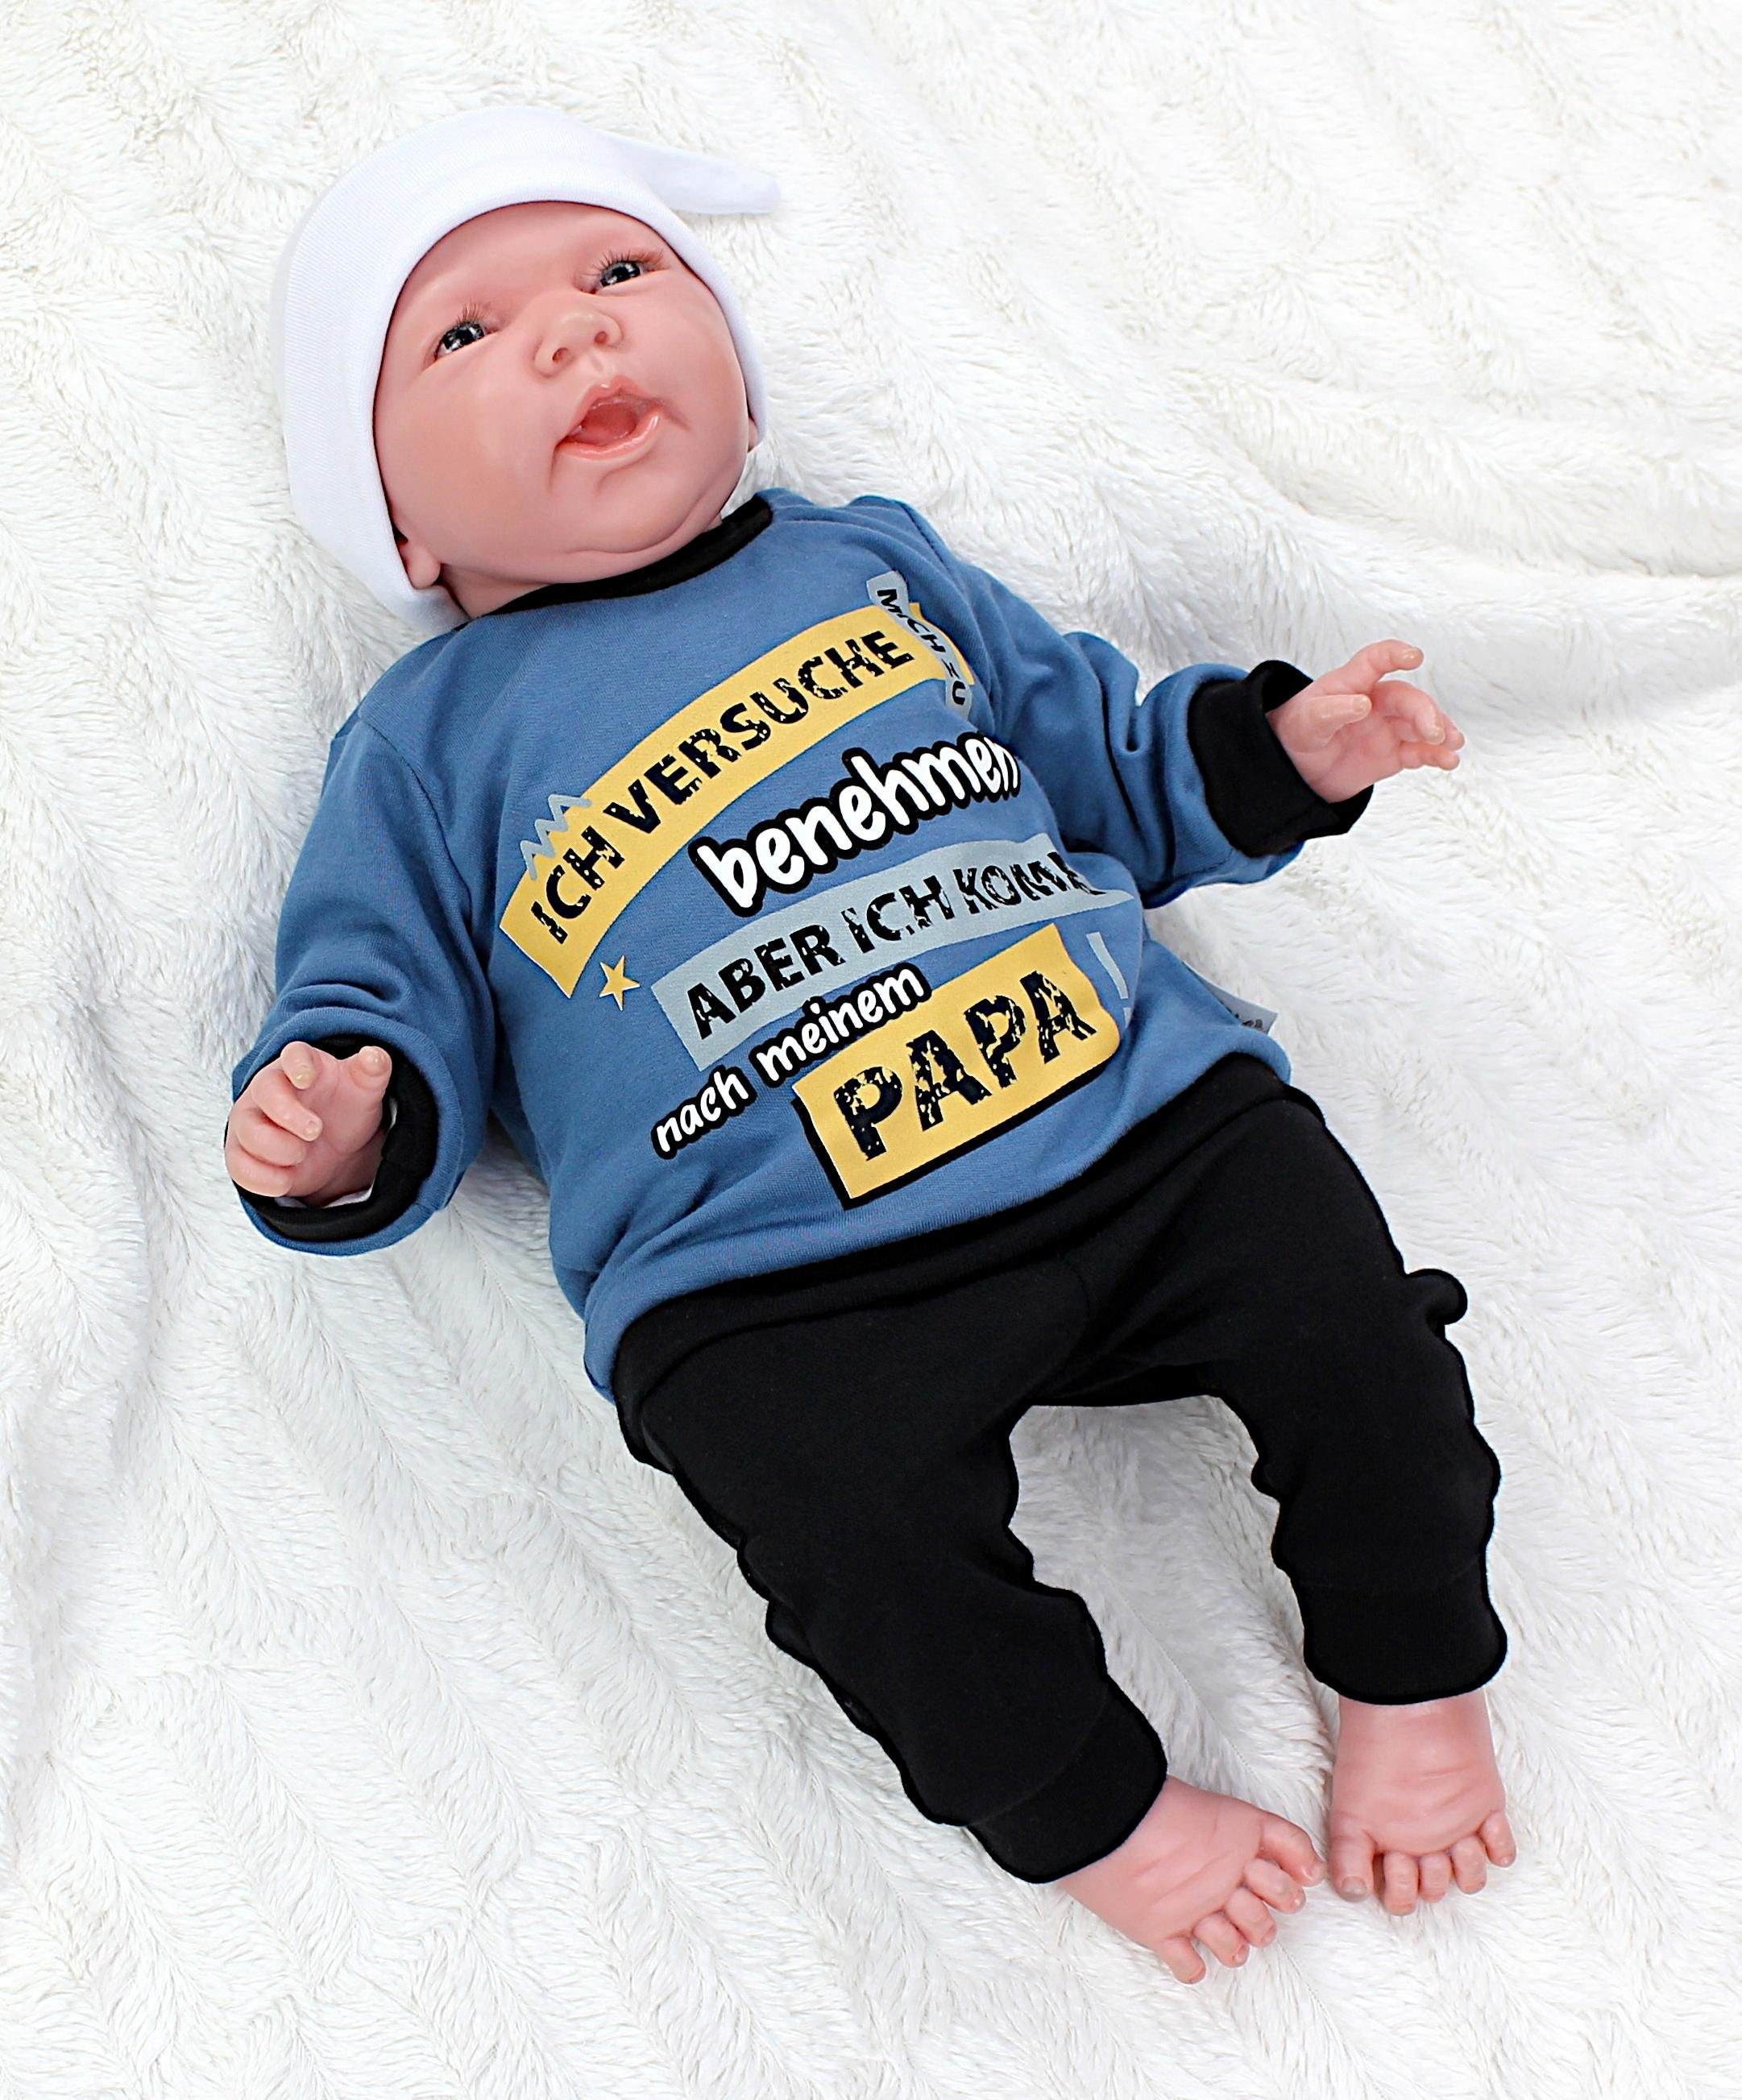 Erstausstattungspaket mit Baby Langarmshirt Jeansblau Ich versuche Print / Schwarz zu mich Spruch benehmen TupTam Babykleidung Jungen Outfit Babyhose